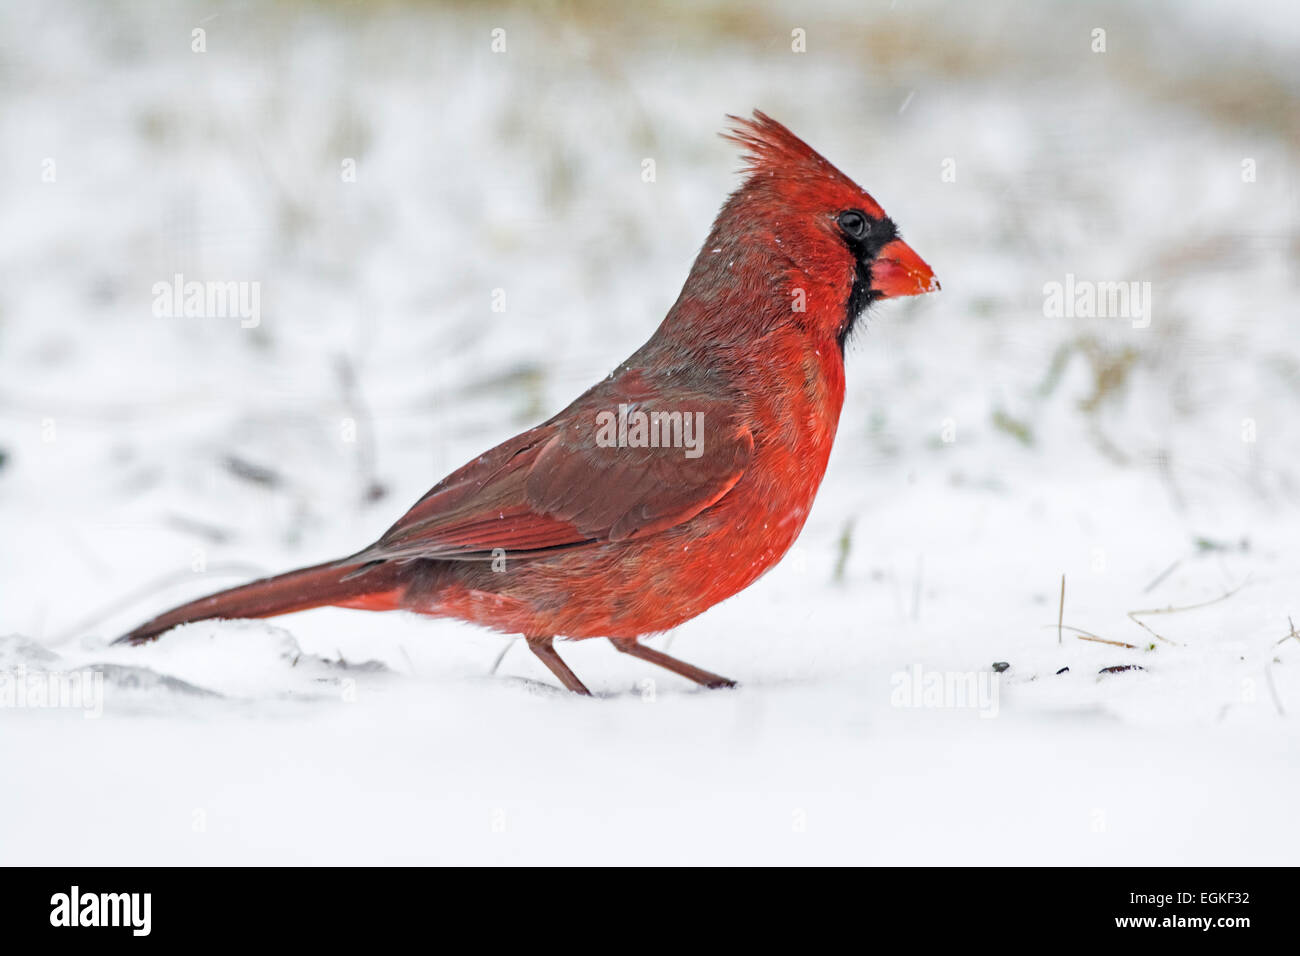 Northern Cardinal (Cardinalis cardinalis) in the snow. Stock Photo